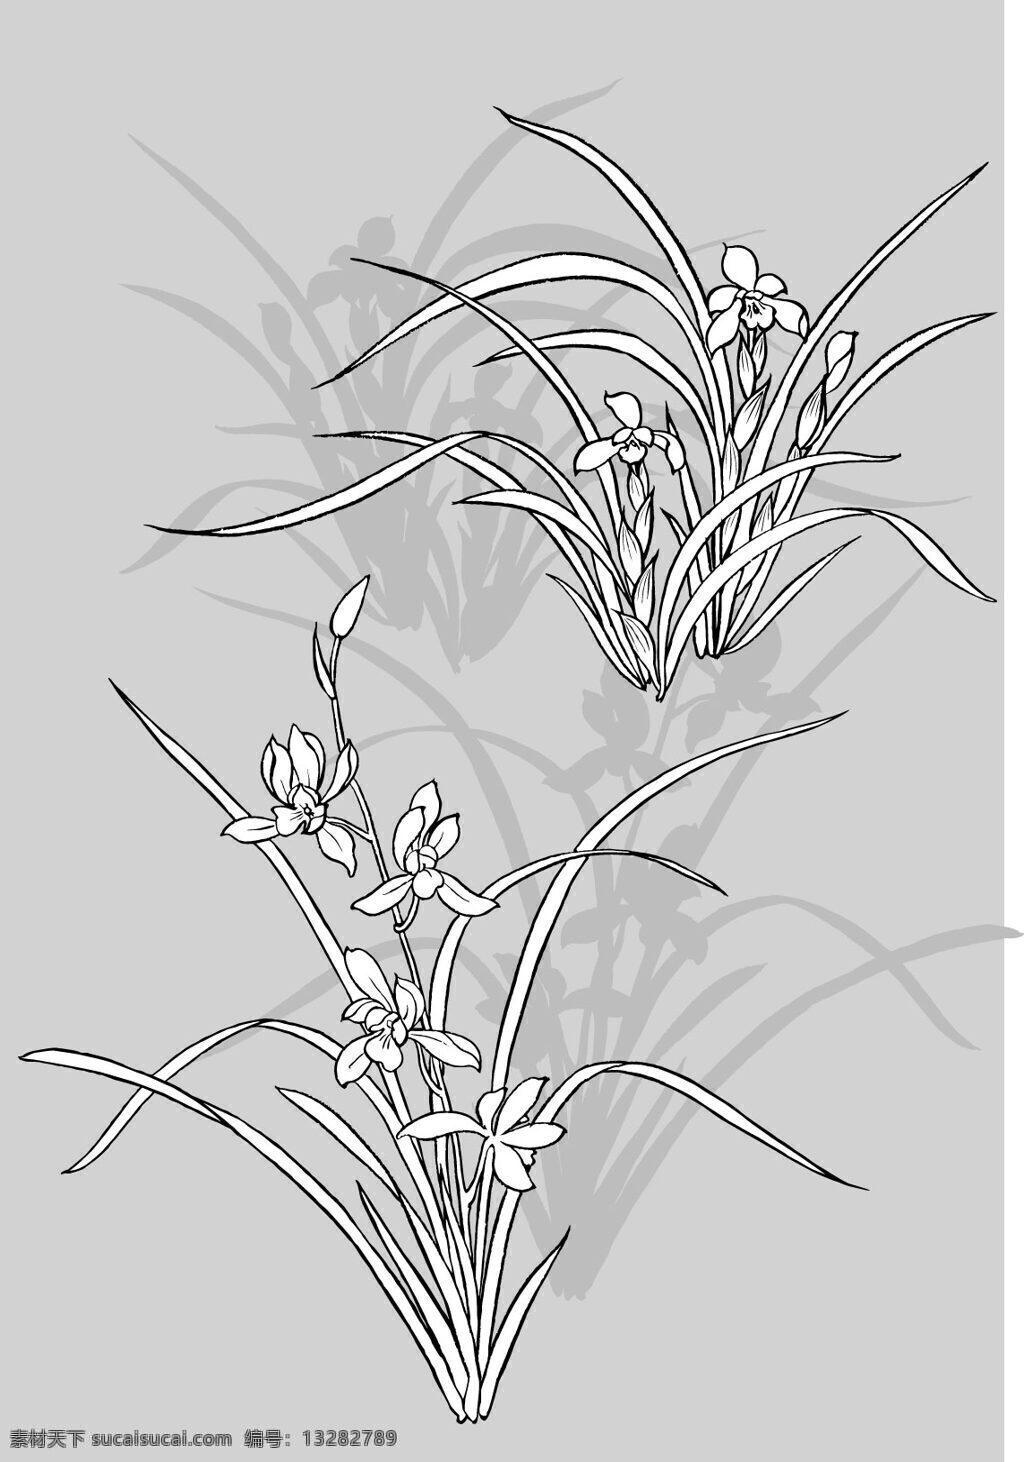 花卉 动物 图案 底纹 白描 花纹 线稿 花卉动物 底纹边框